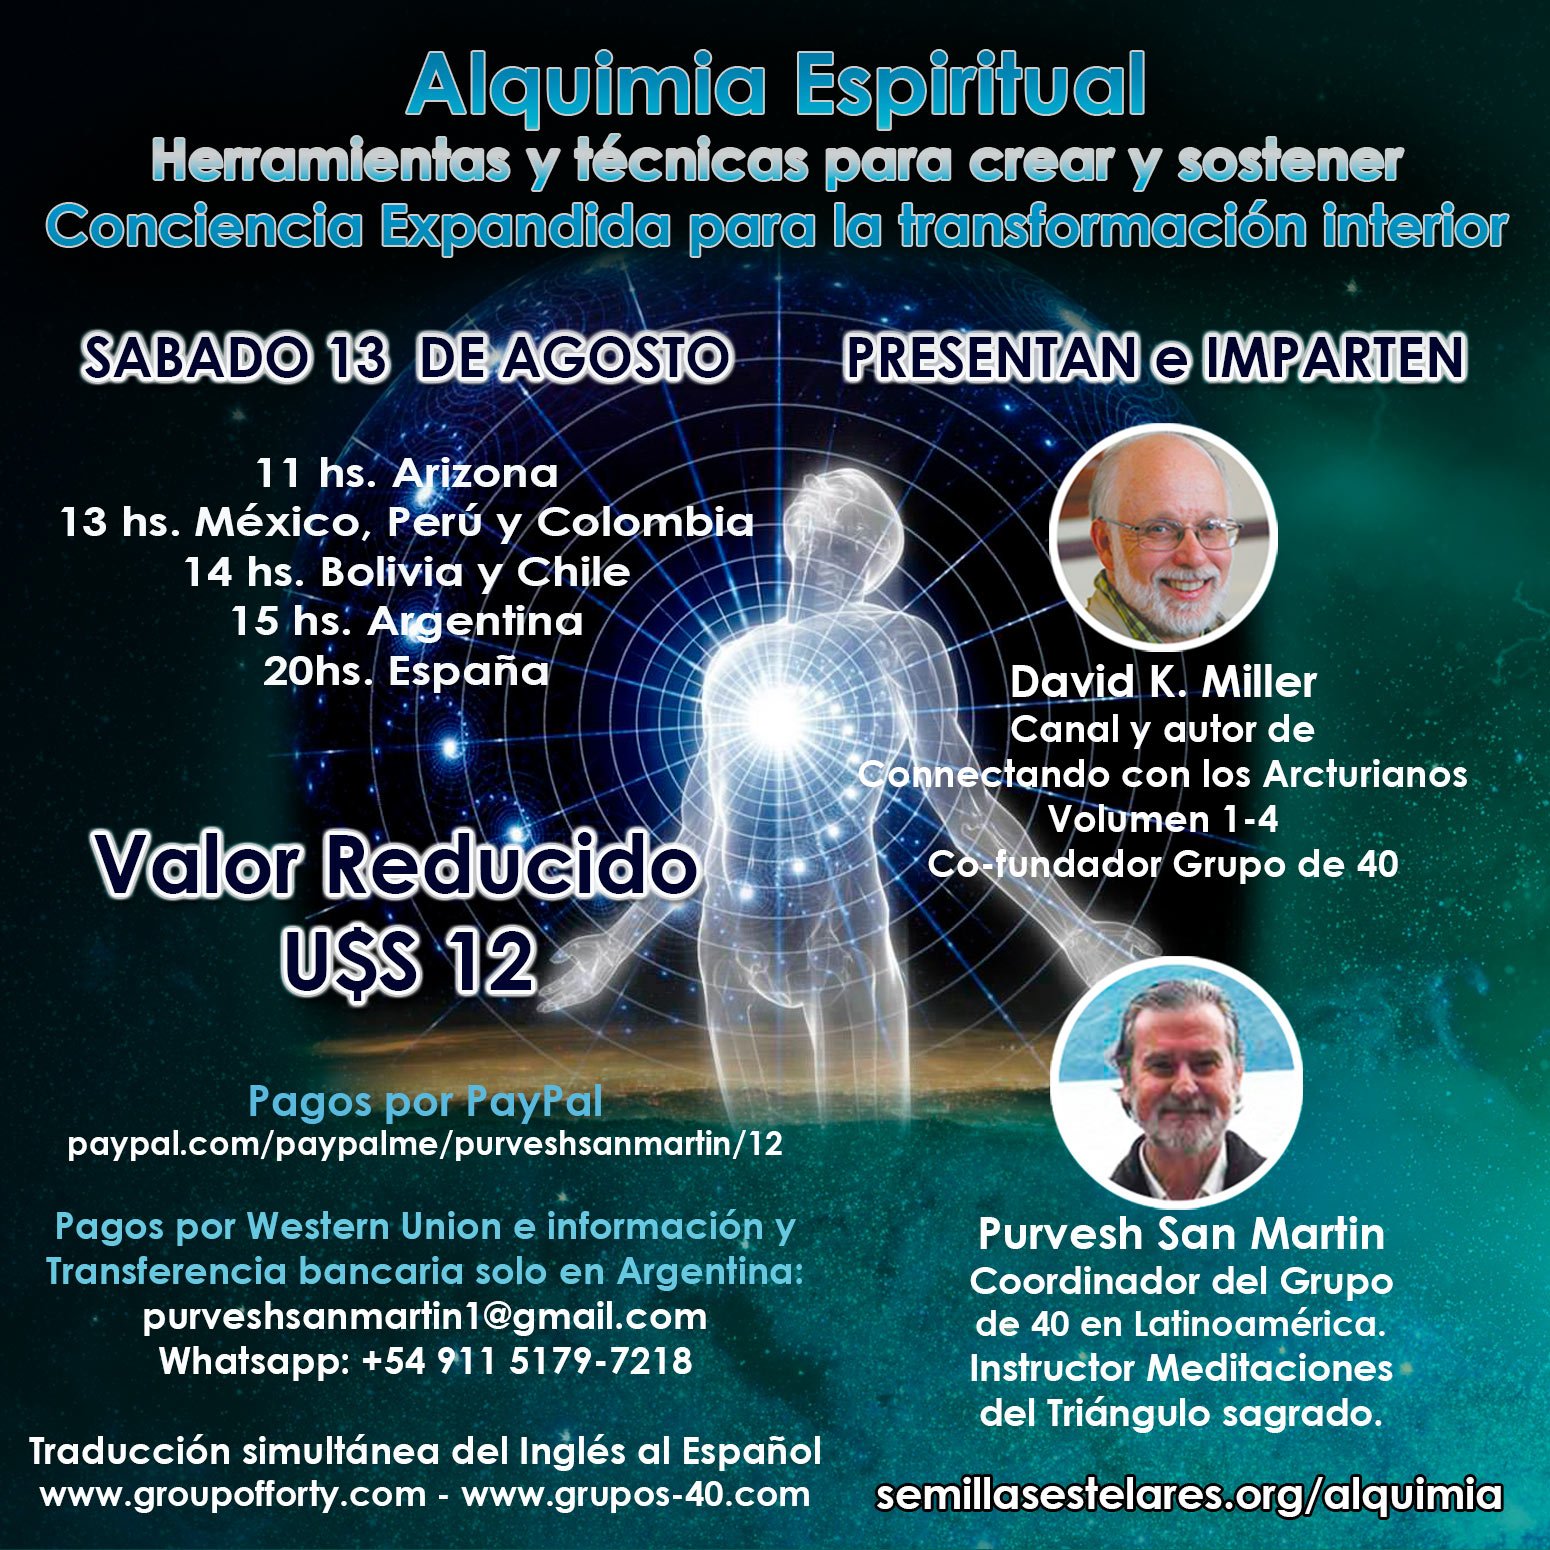 Alquimia Espiritual con David Miller y Purvesh San Martín